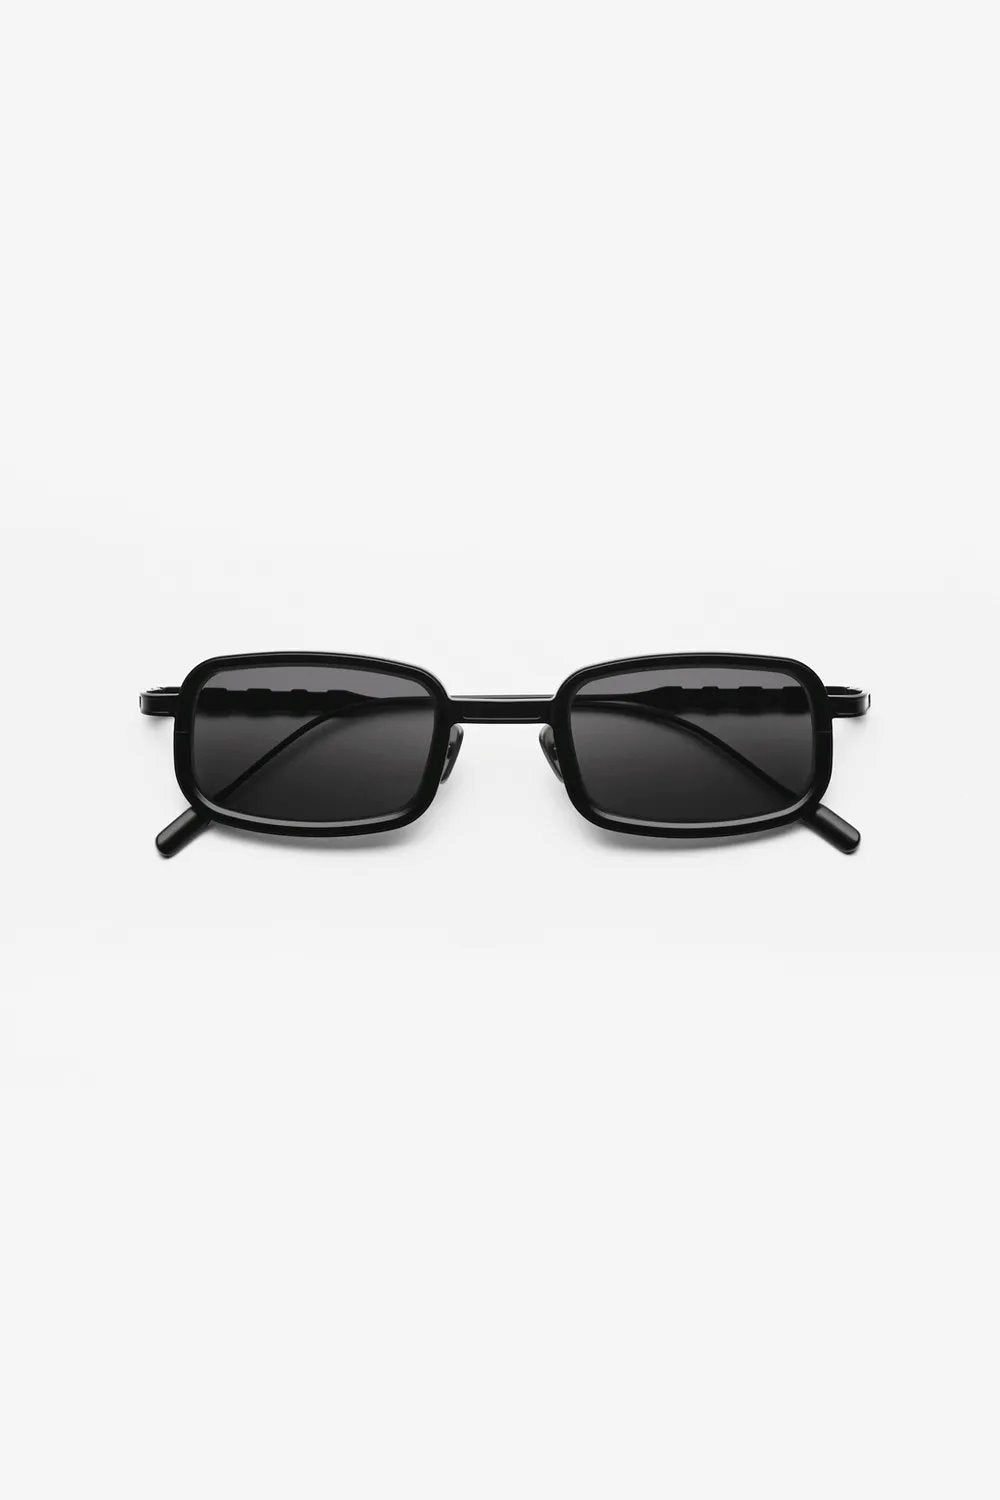 Capote - CC144 Sunglasses Capote Black ONES 